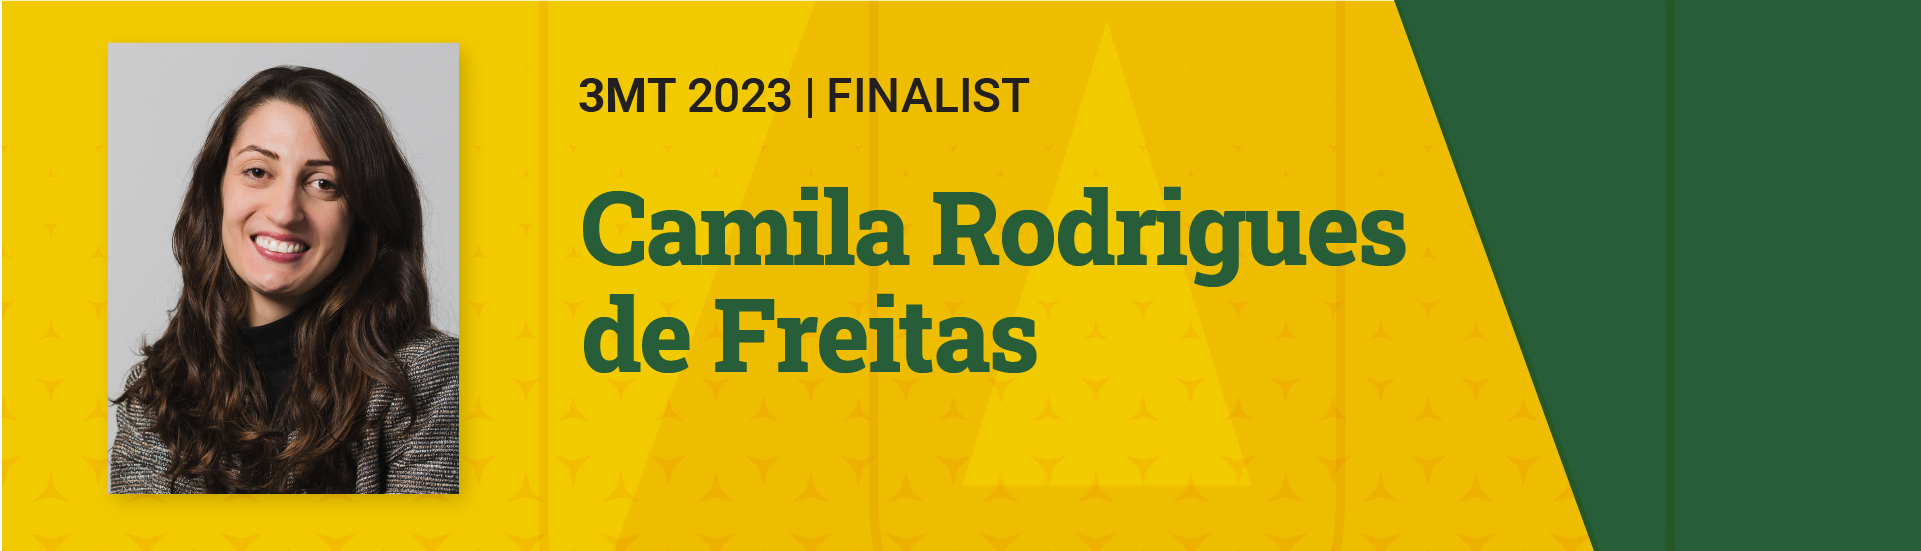 3MT 2023 Finalist Camila Rodrigues de Freitas 